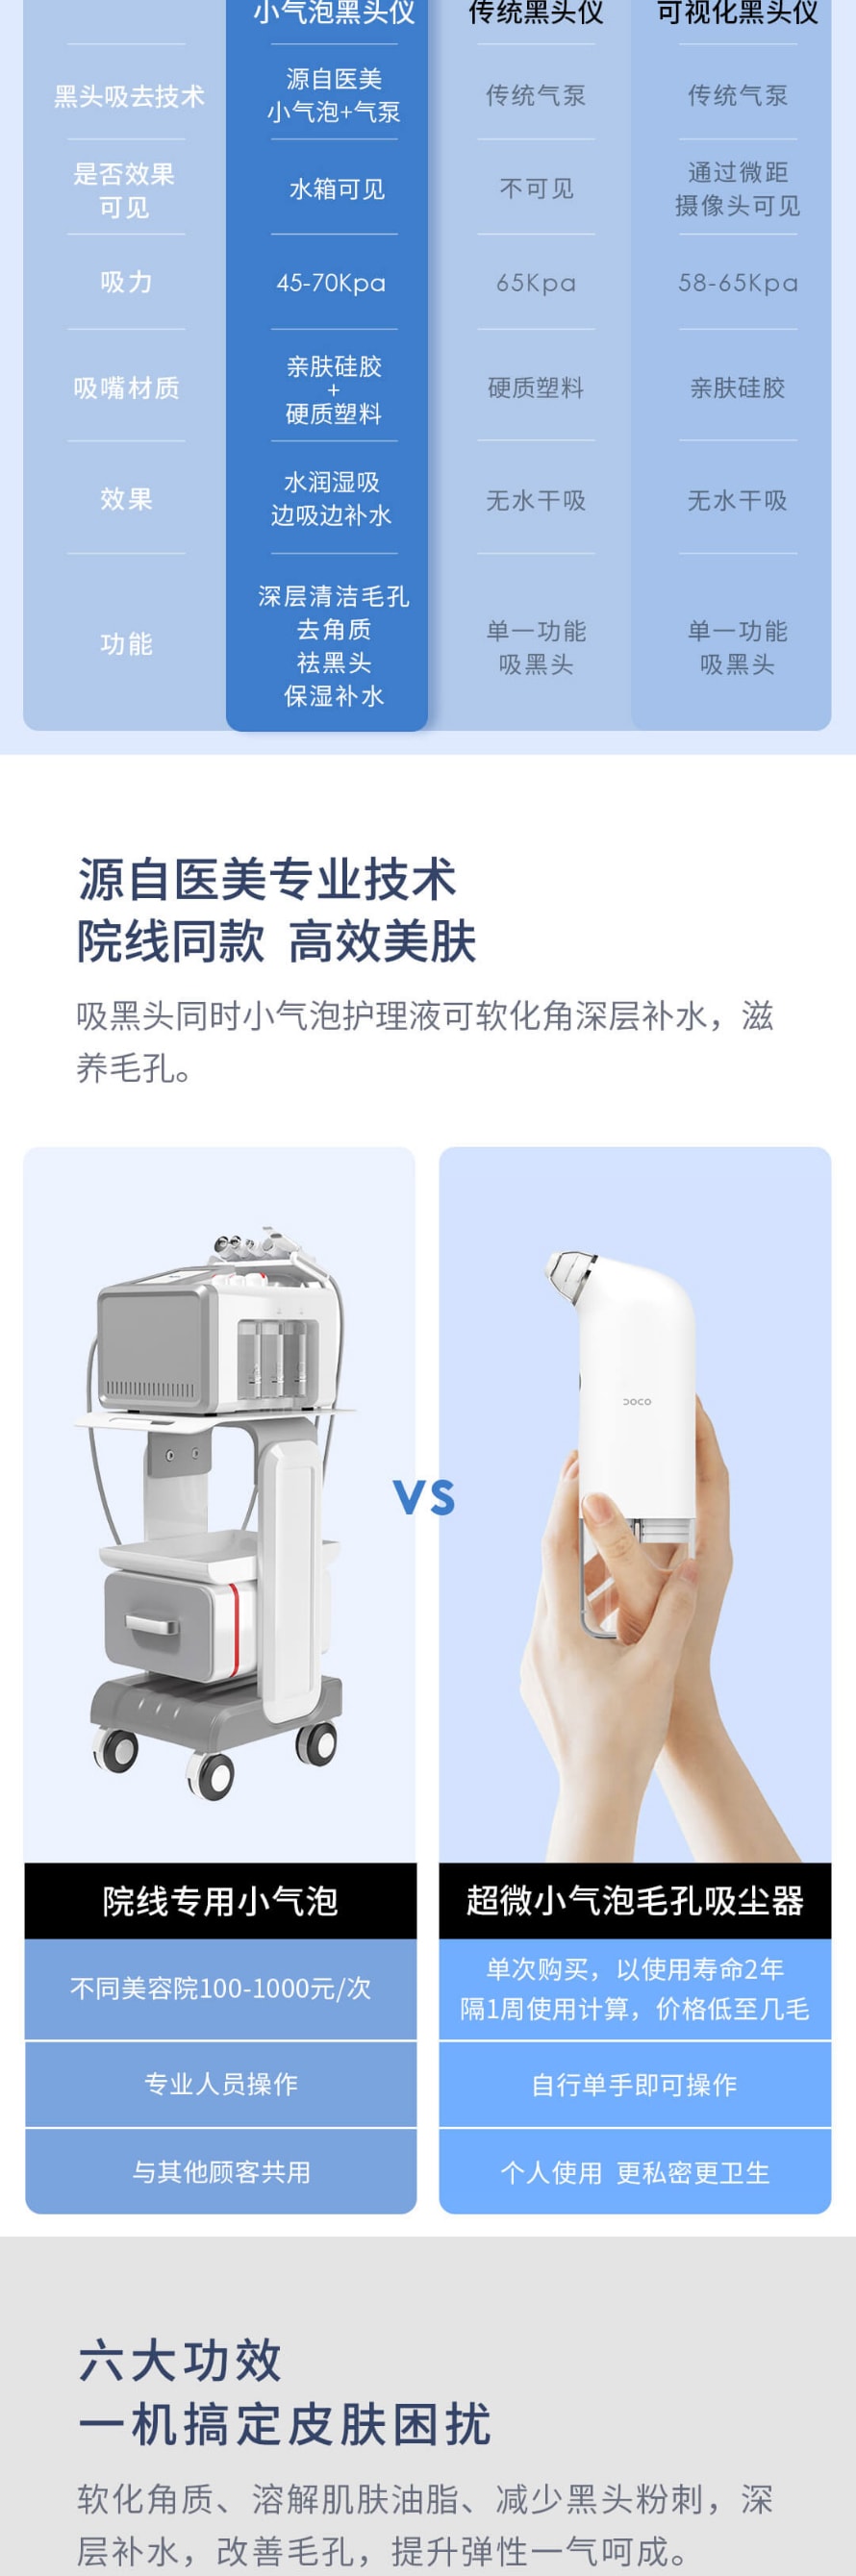 【中国直邮】小米有品 DOCO 超微小气泡毛孔吸尘器黑头仪 护理液两瓶